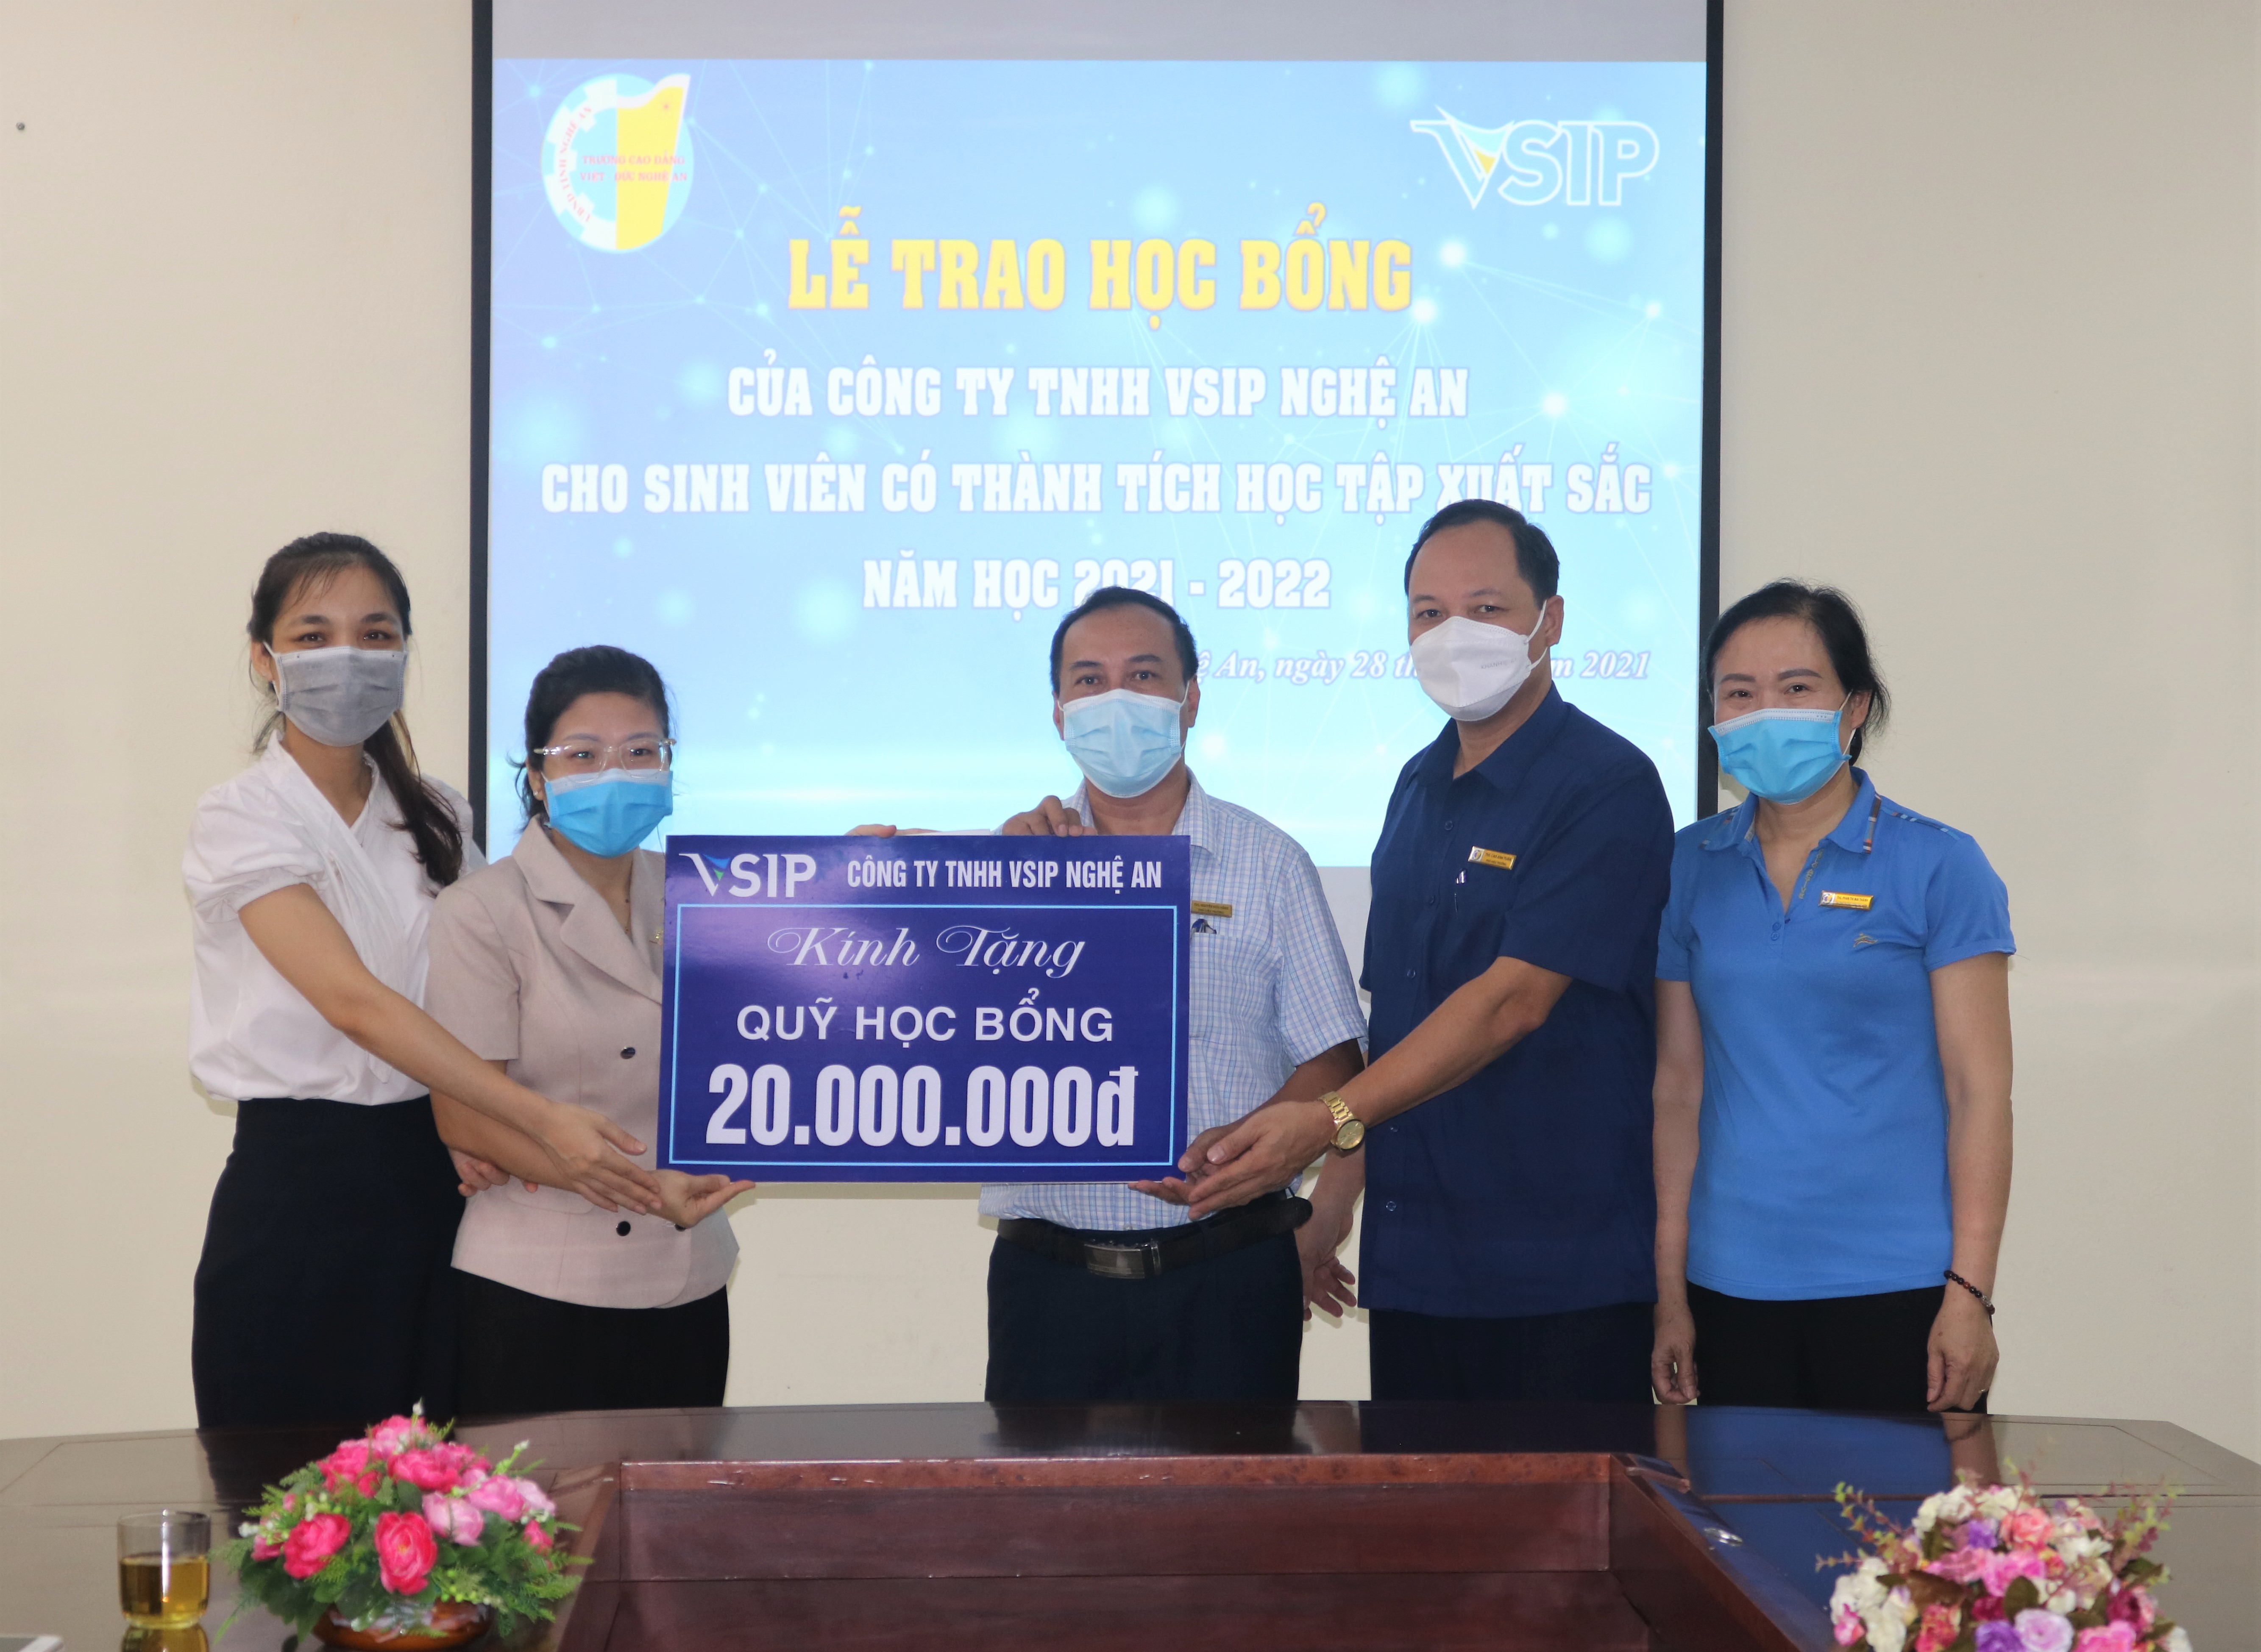 Trường Cao đẳng Việt – Đức Nghệ An tổ chức Lễ trao học bổng của Công ty TNHH Vsip Nghệ An cho học sinh, sinh viên có thành tích học tập xuất sắc năm học 2021 – 2022